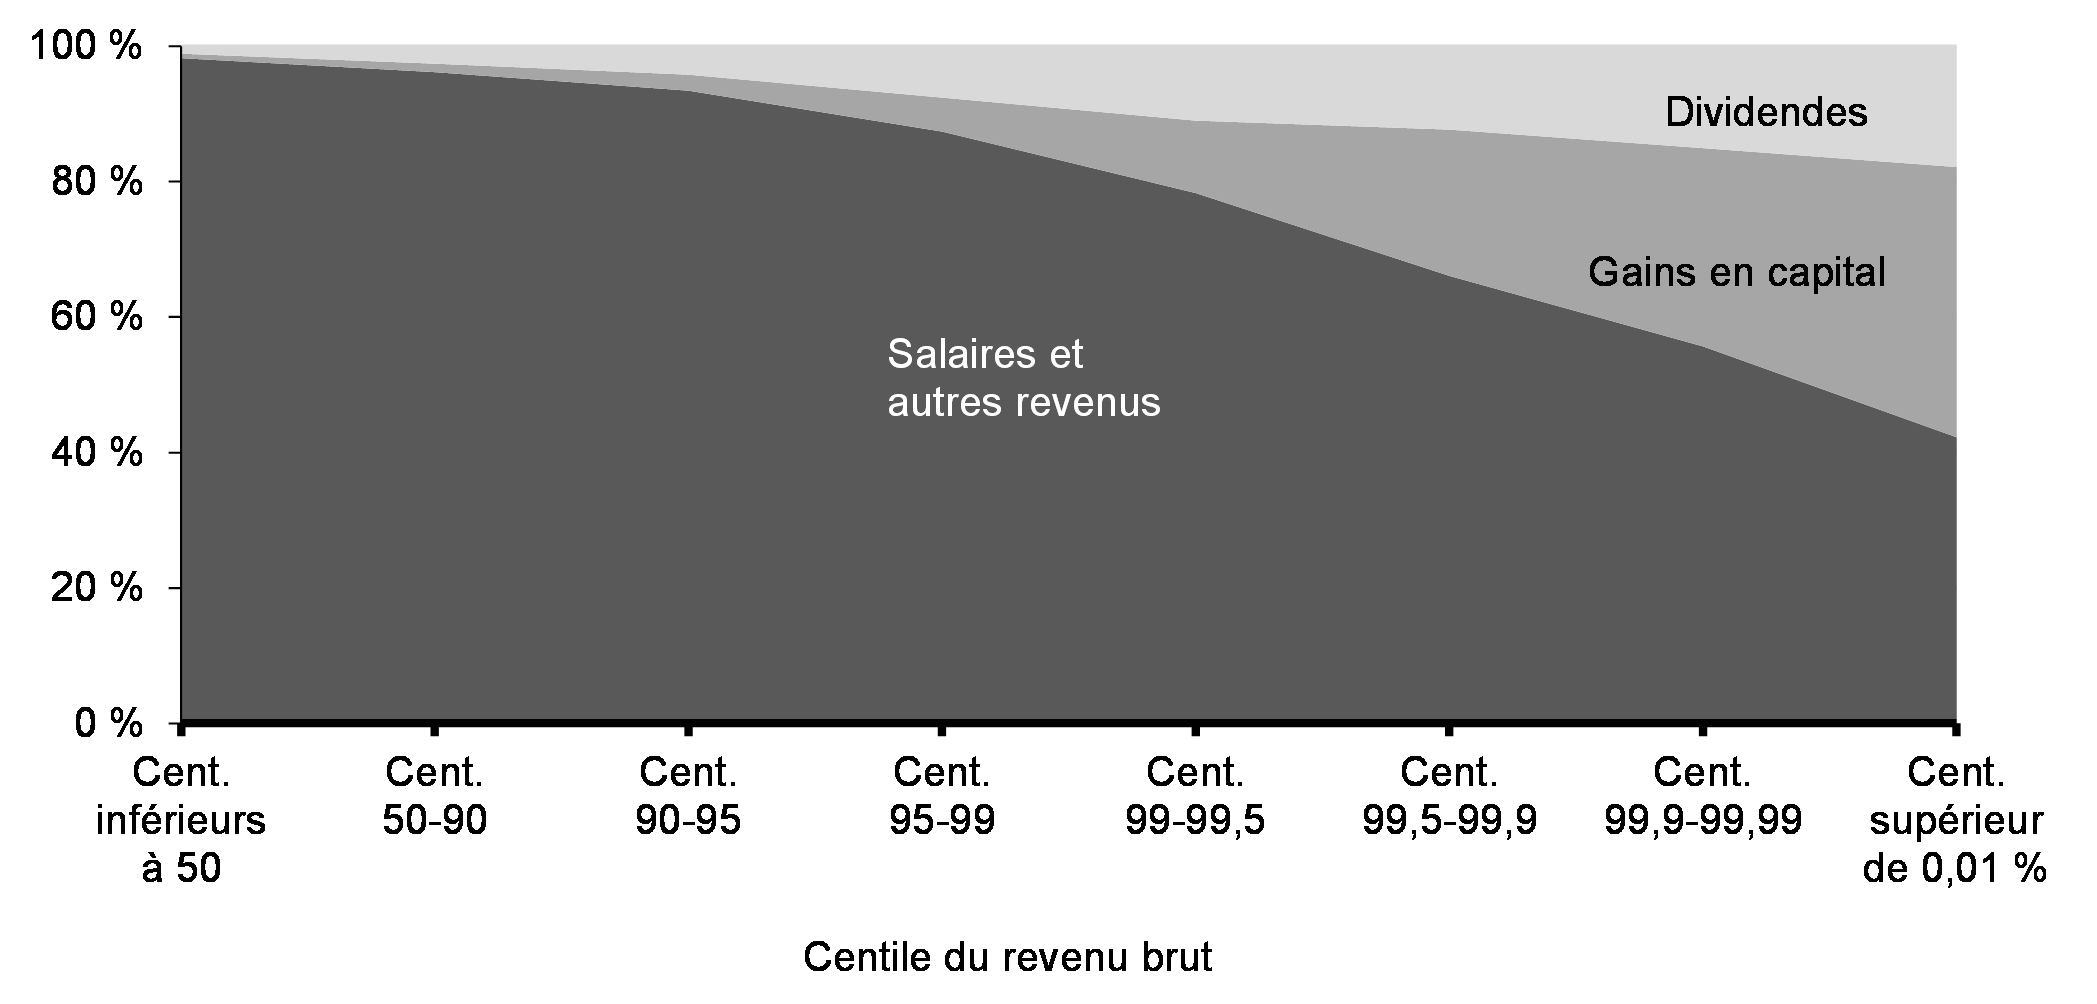 Graphique 8.2 : Gains en capital en proportion du revenu brut par    centile de revenu